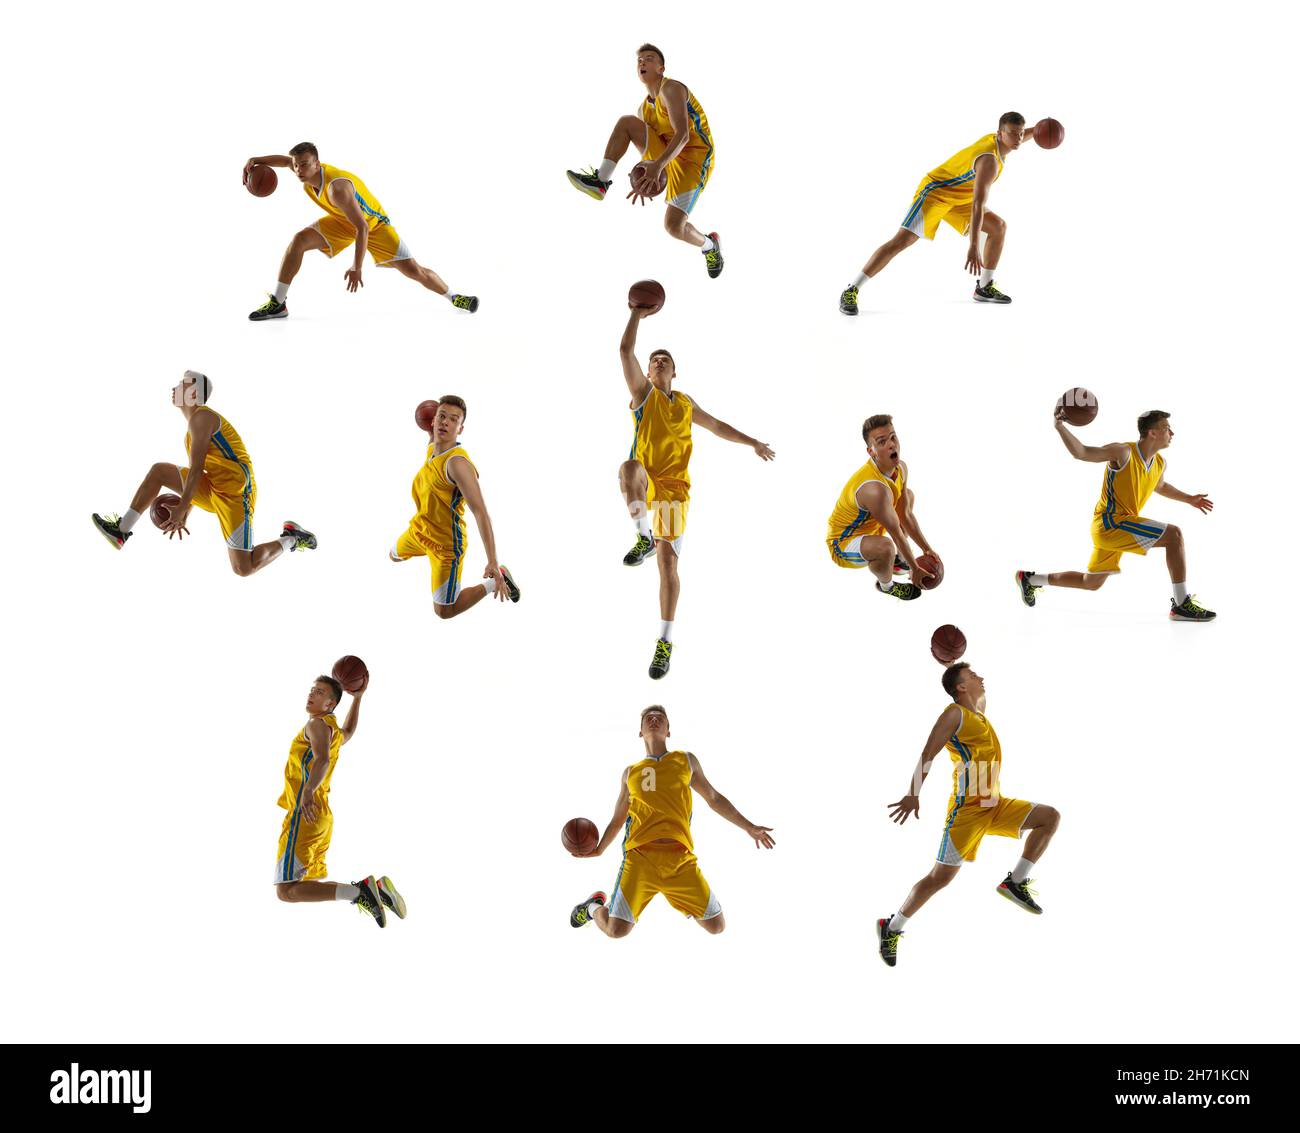 Descubrir 36+ imagen movimiento de basquetbol